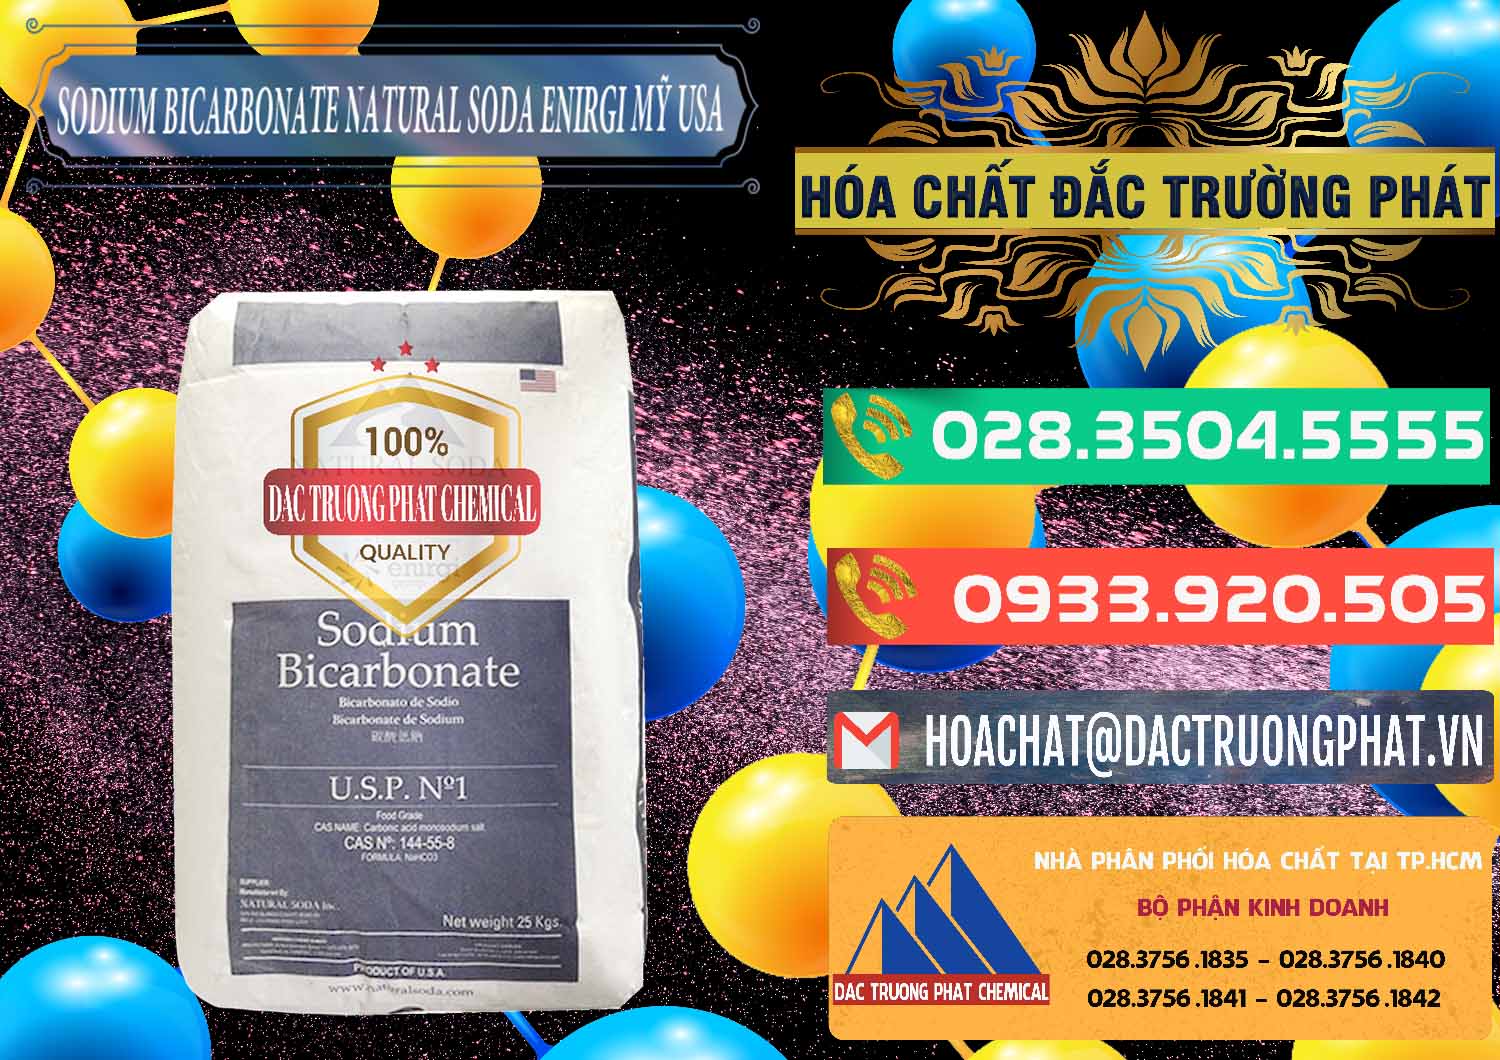 Đơn vị chuyên phân phối - bán Sodium Bicarbonate – Bicar NaHCO3 Food Grade Natural Soda Enirgi Mỹ USA - 0257 - Đơn vị chuyên bán _ phân phối hóa chất tại TP.HCM - congtyhoachat.com.vn